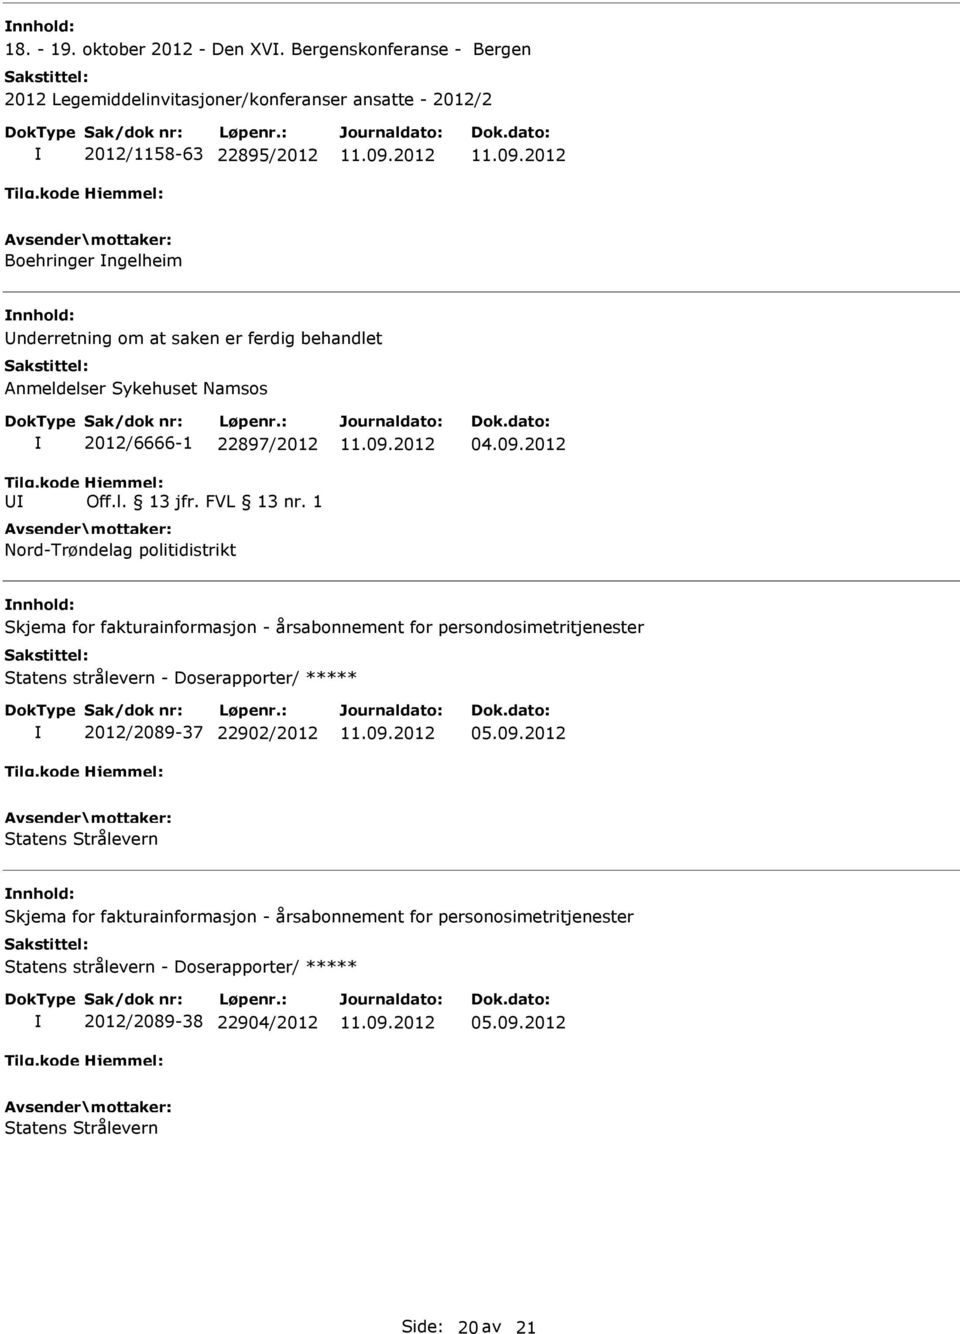 behandlet Anmeldelser Sykehuset Namsos 2012/6666-1 22897/2012 Off.l. 13 jfr. FVL 13 nr. 1 Nord-Trøndelag politidistrikt 04.09.